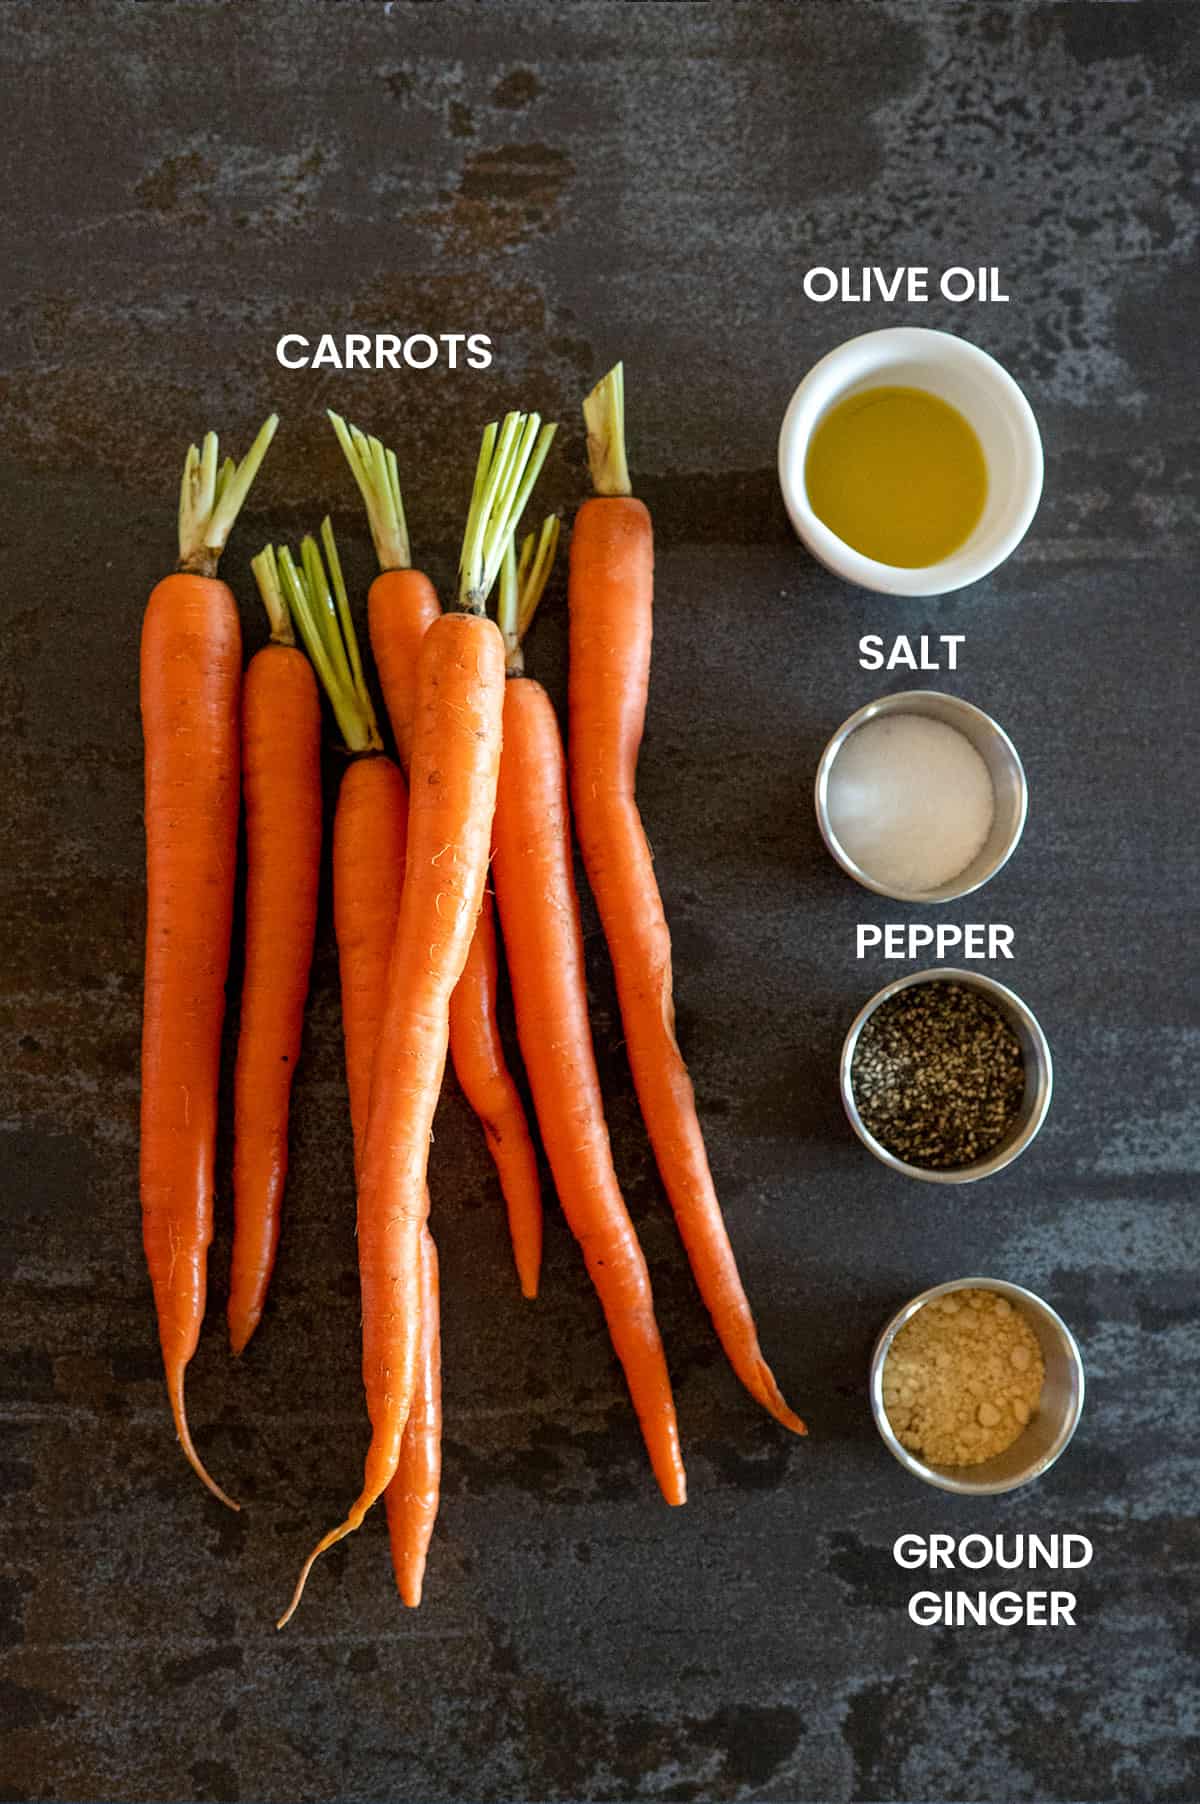 grilled carrots ingredients: Carrots, olive oil, salt, pepper, ground ginger.